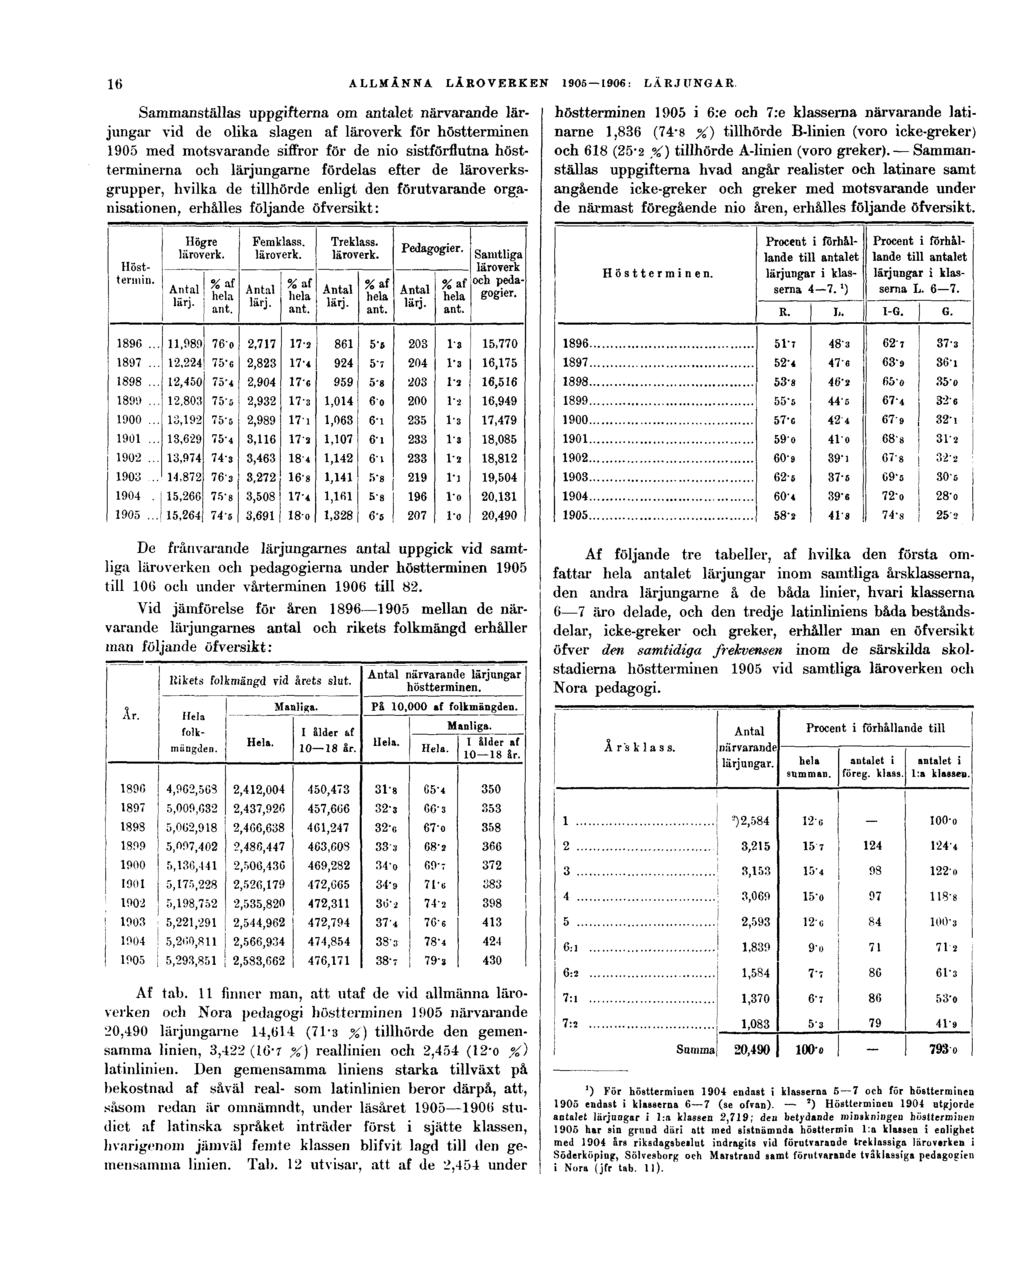 16 Sammanställas uppgifterna om antalet närvarande lärjungar vid de olika slagen af läroverk för höstterminen 1905 med motsvarande siffror för de nio sistförflutna höstterminerna och lärjungarne